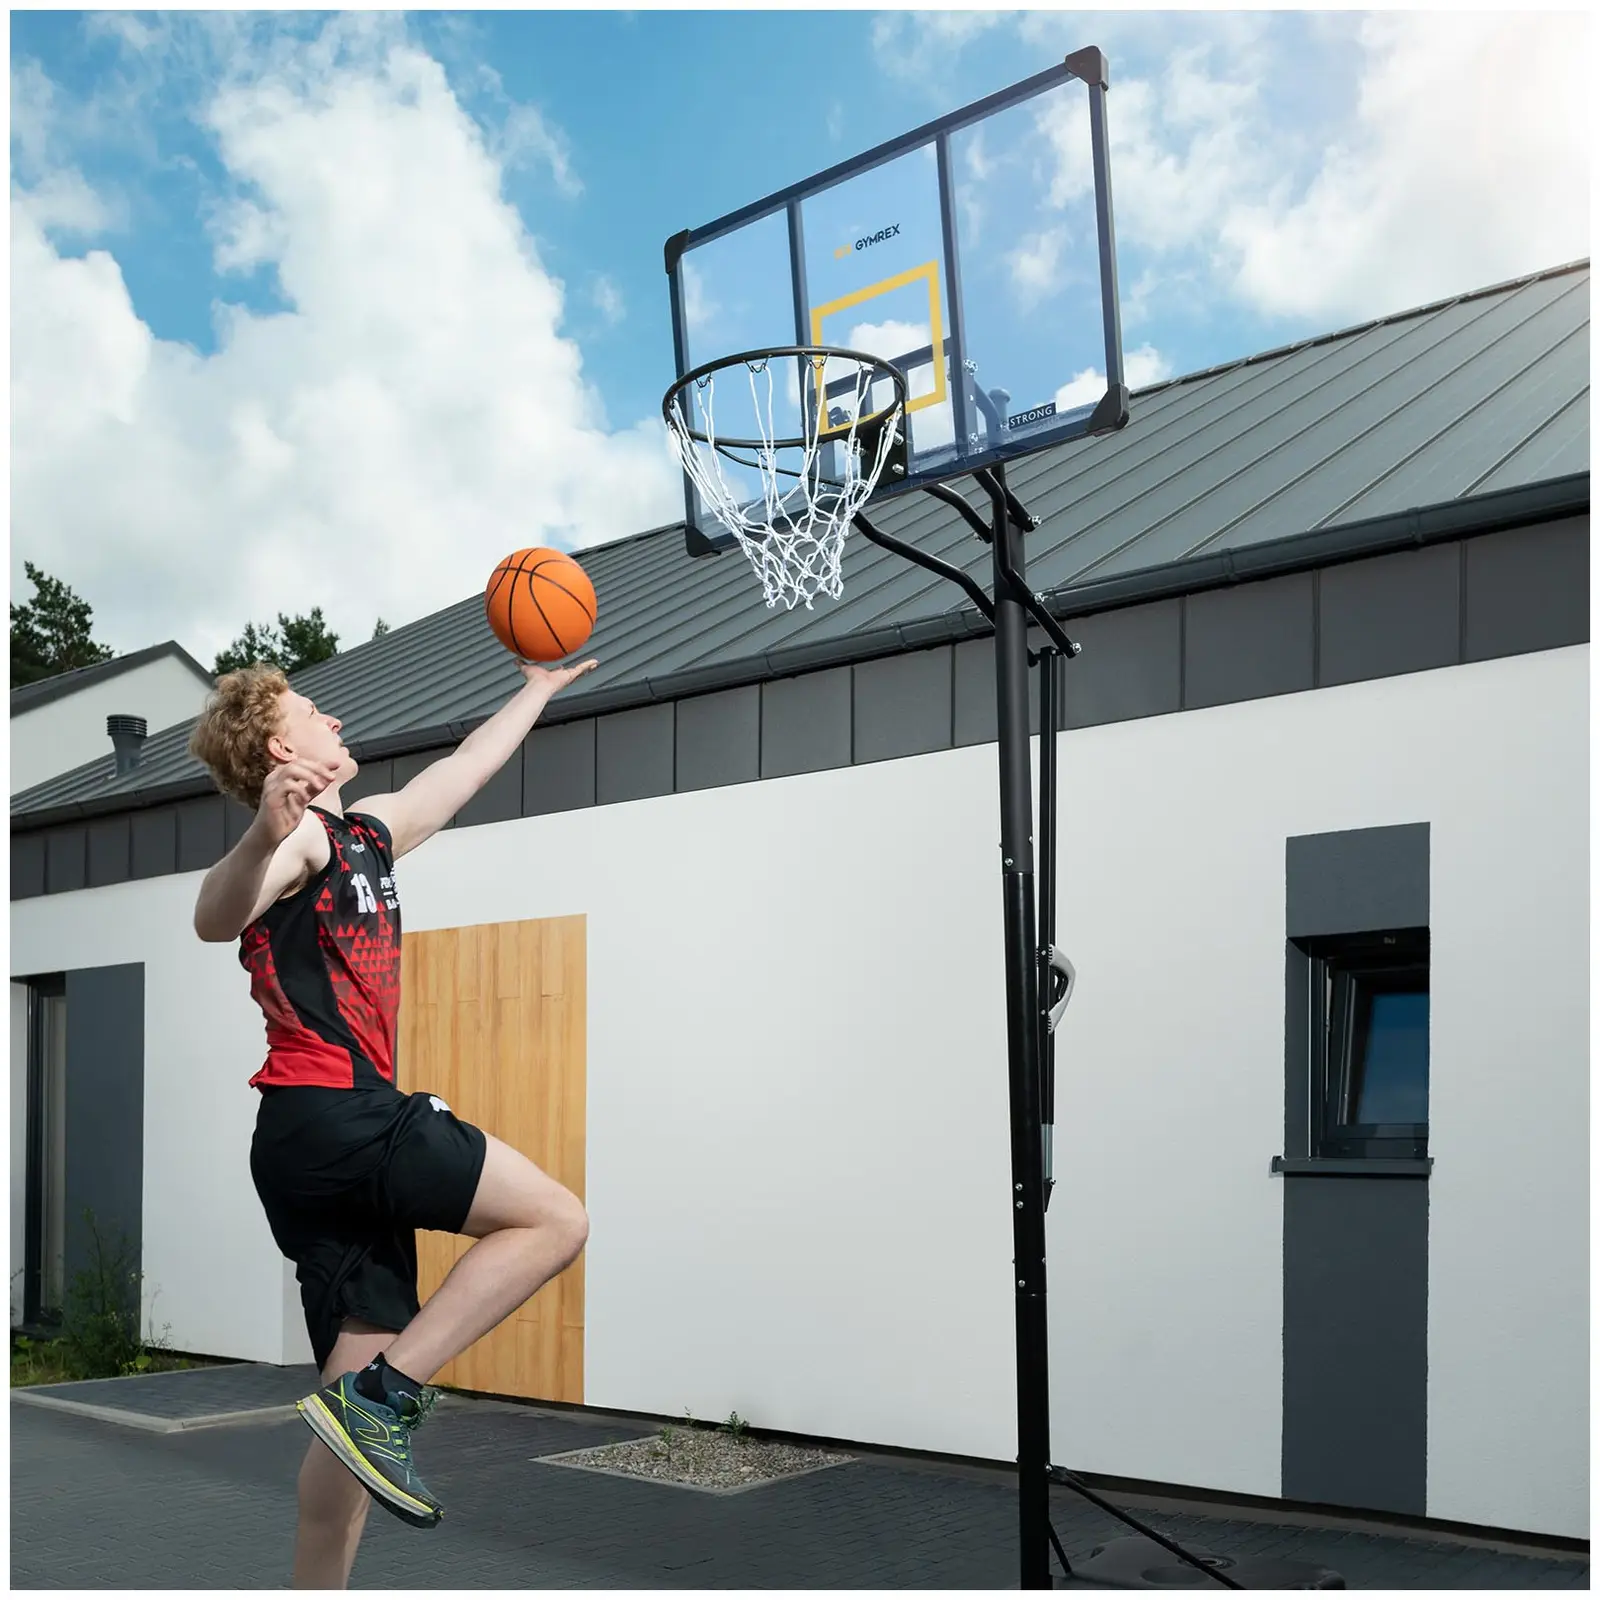 Баскетболна стойка - регулируема височина - от 230 до 305 см